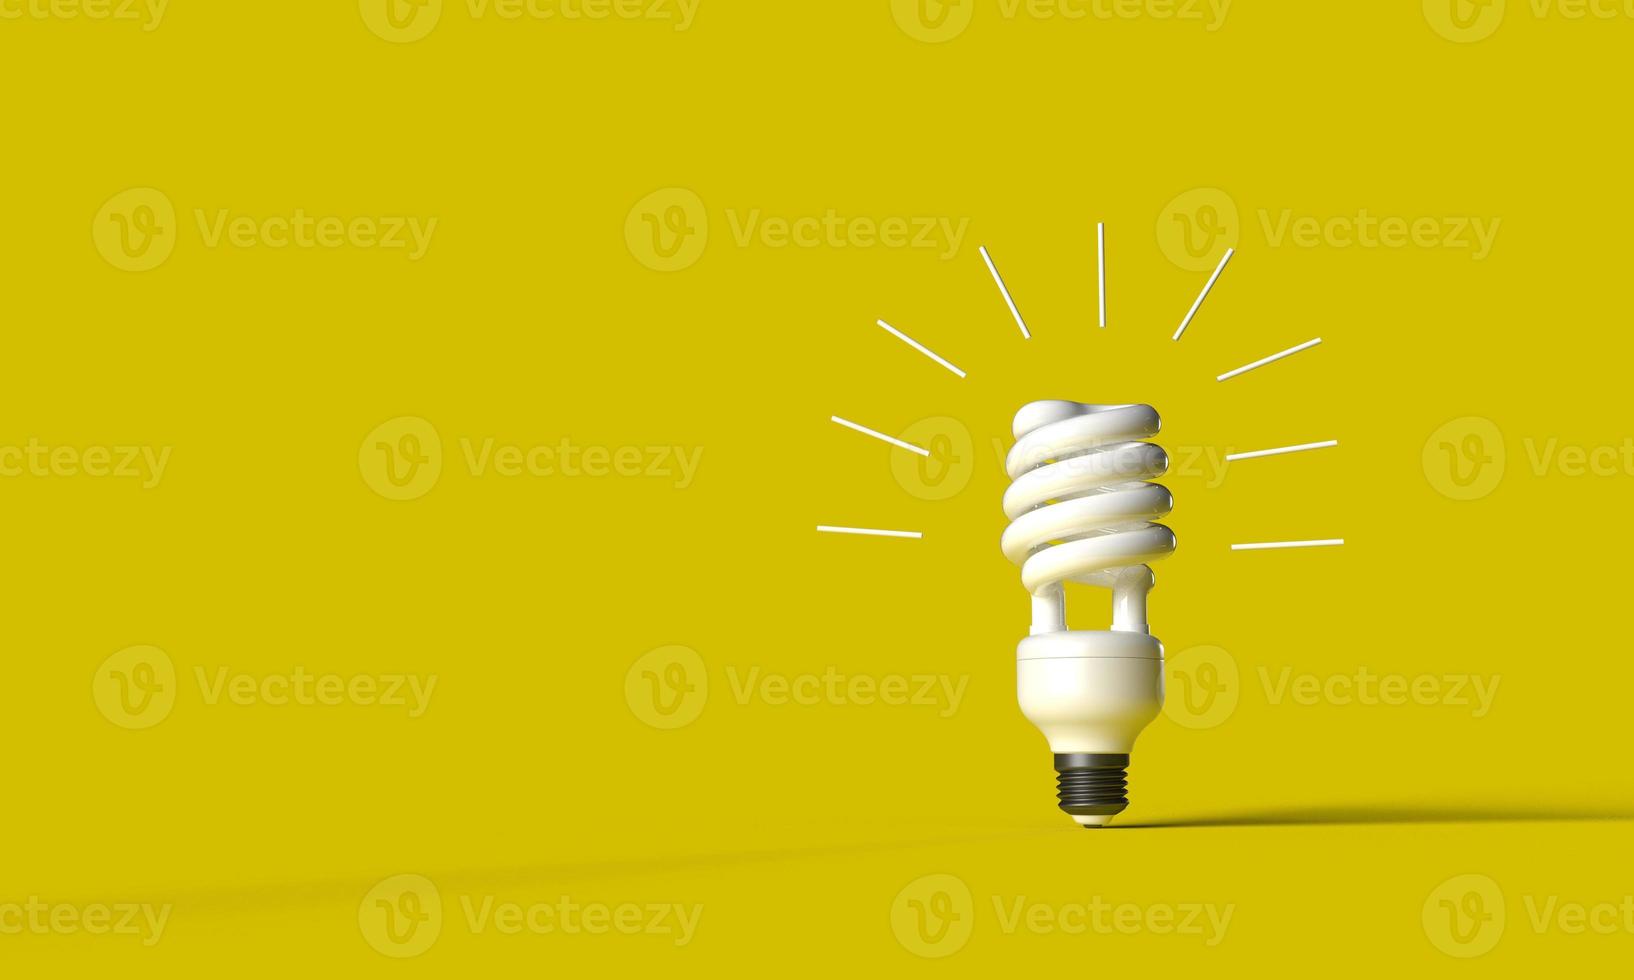 lâmpada luminária energia poder elétrico amarelo laranja dourado cor fundo papel de parede cópia espaço símbolo decoração ornamento o negócio criatividade estratégia inovação brilhante idéia sucesso gênio tecnologia foto